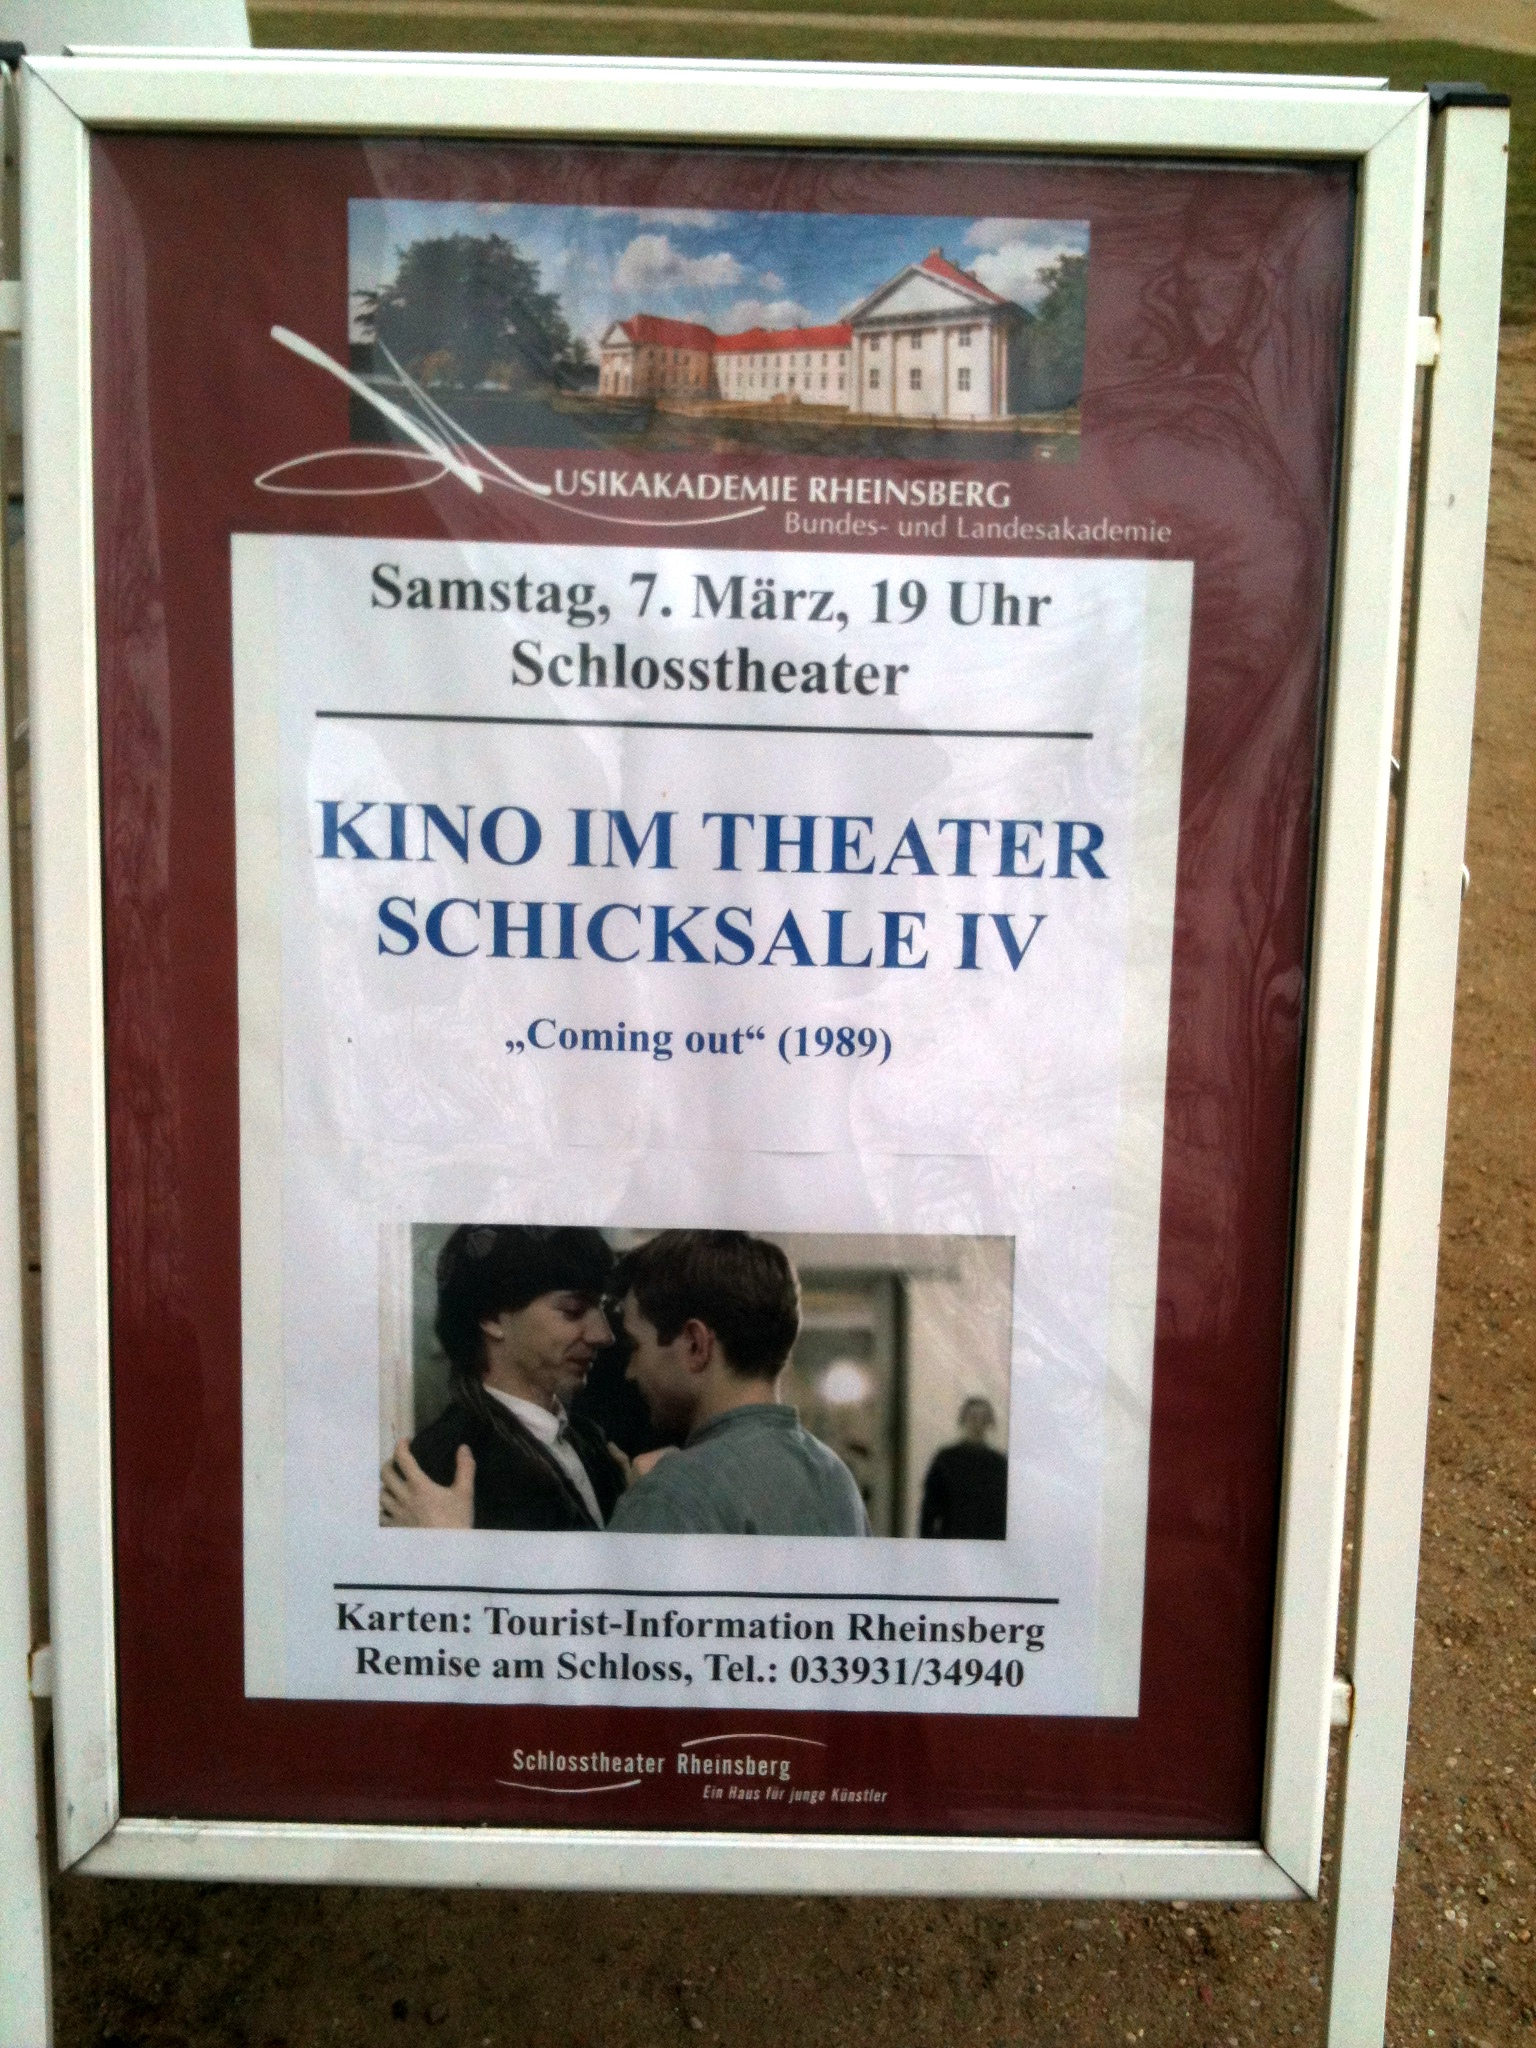 In der Nebensaison wird im Schlosstheater Kino gemacht.